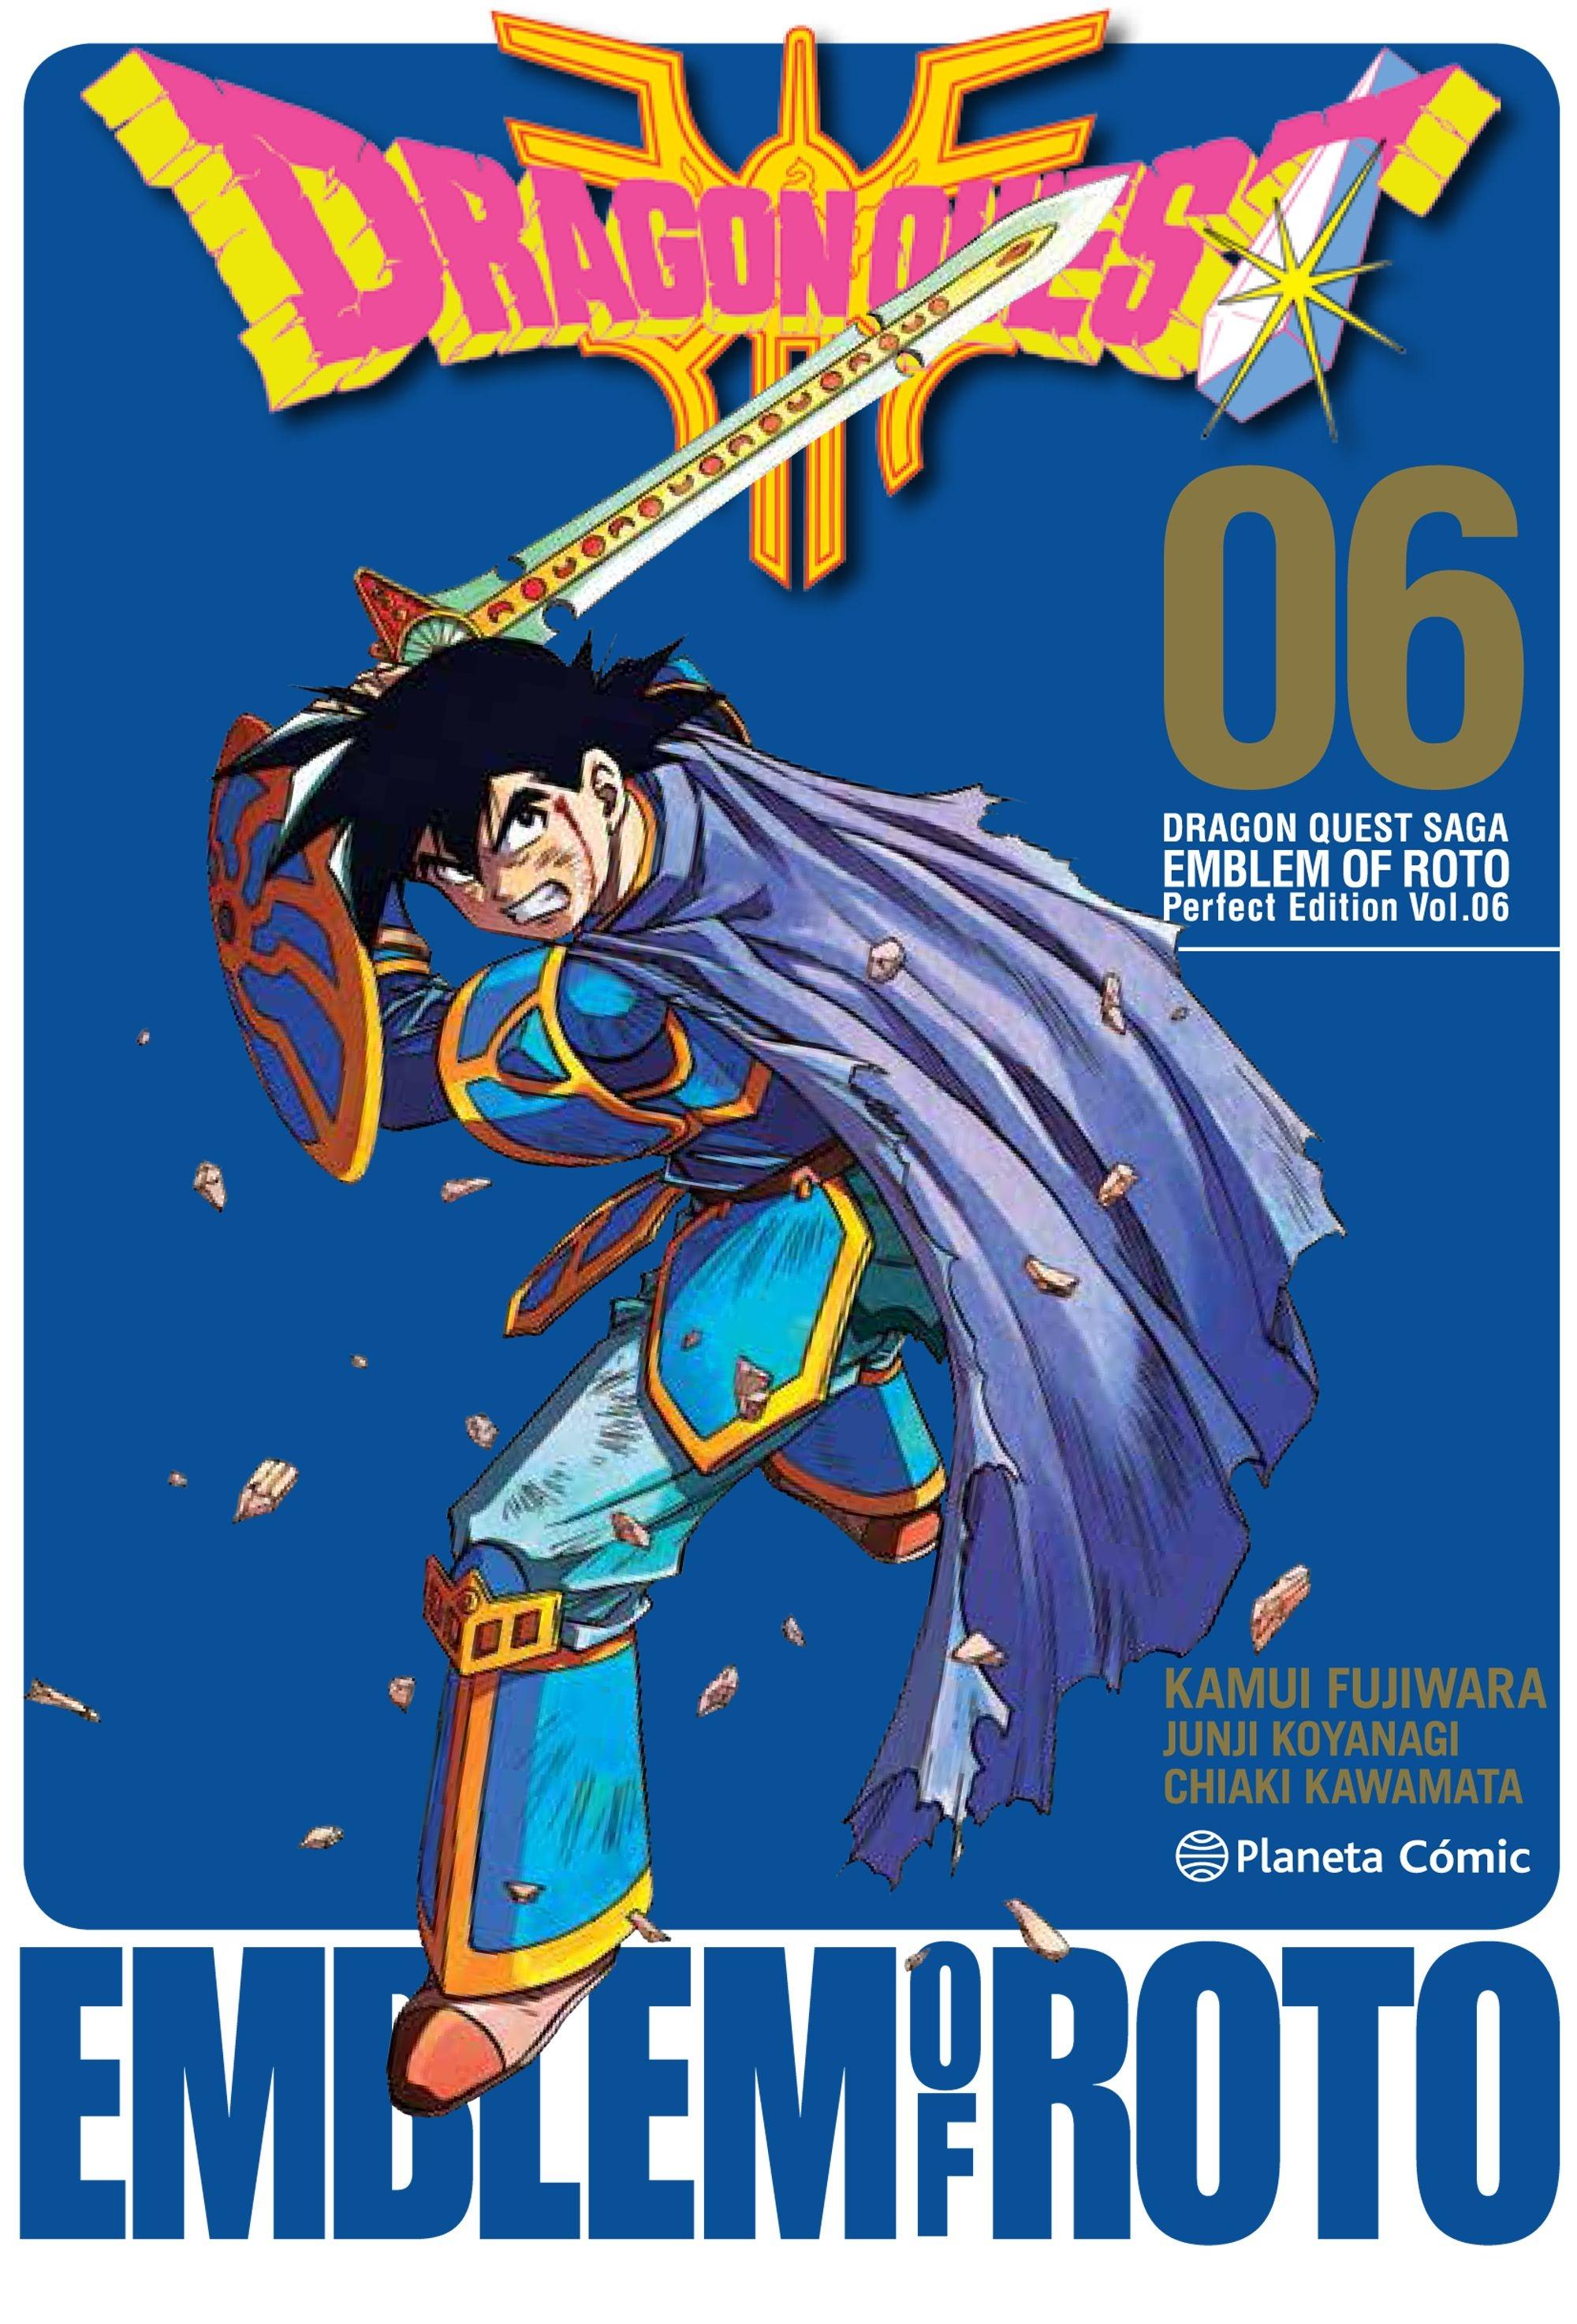 Dragon Quest Saga | Emblem Of Roto Nº 06/15 "Perfect Edition Vol. 06"